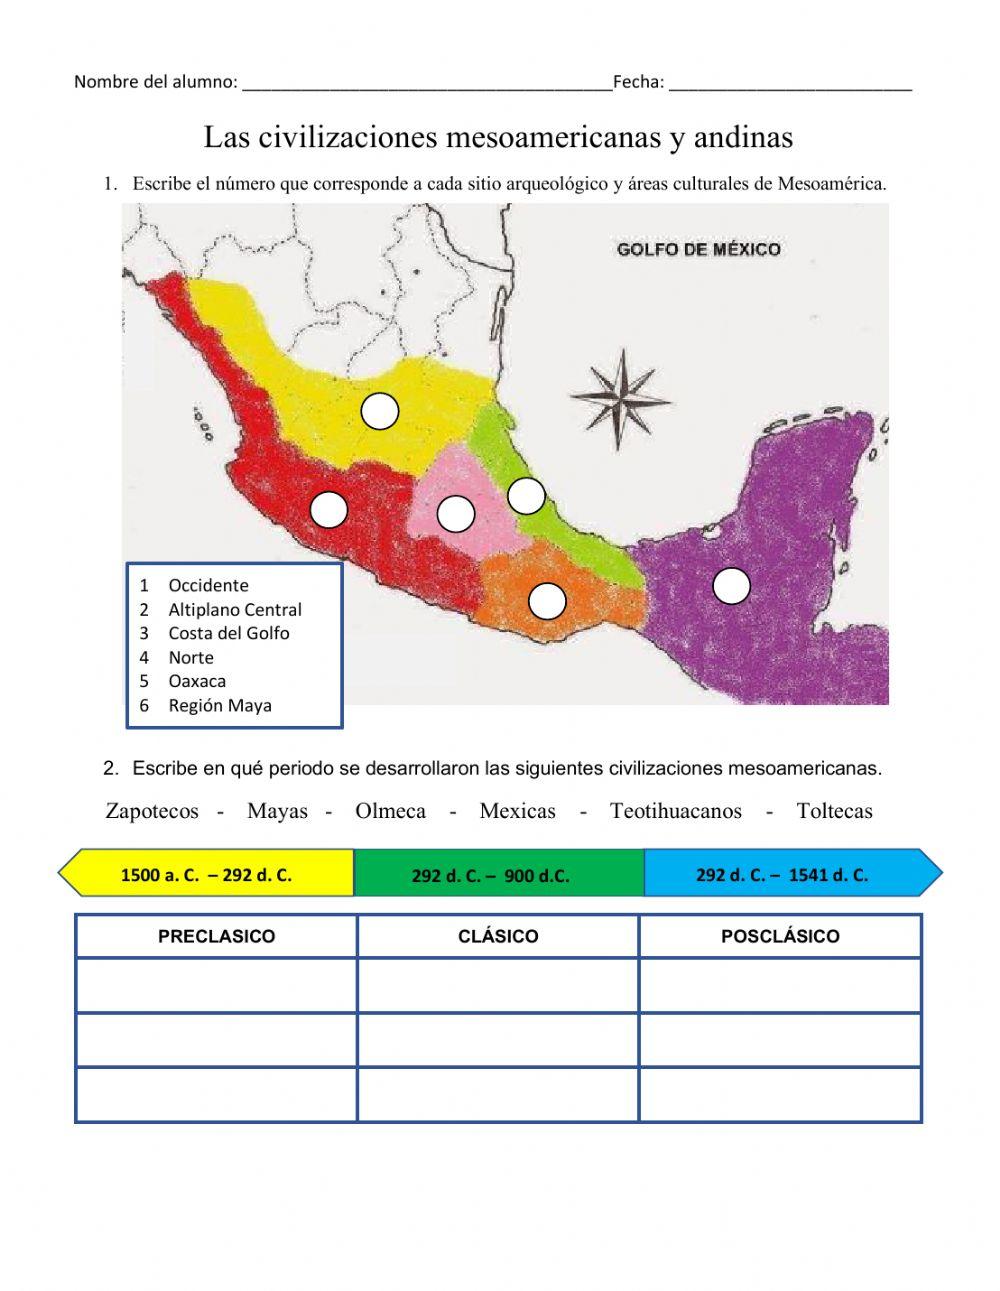 Las ciilizaciones mesoamericanas andinas